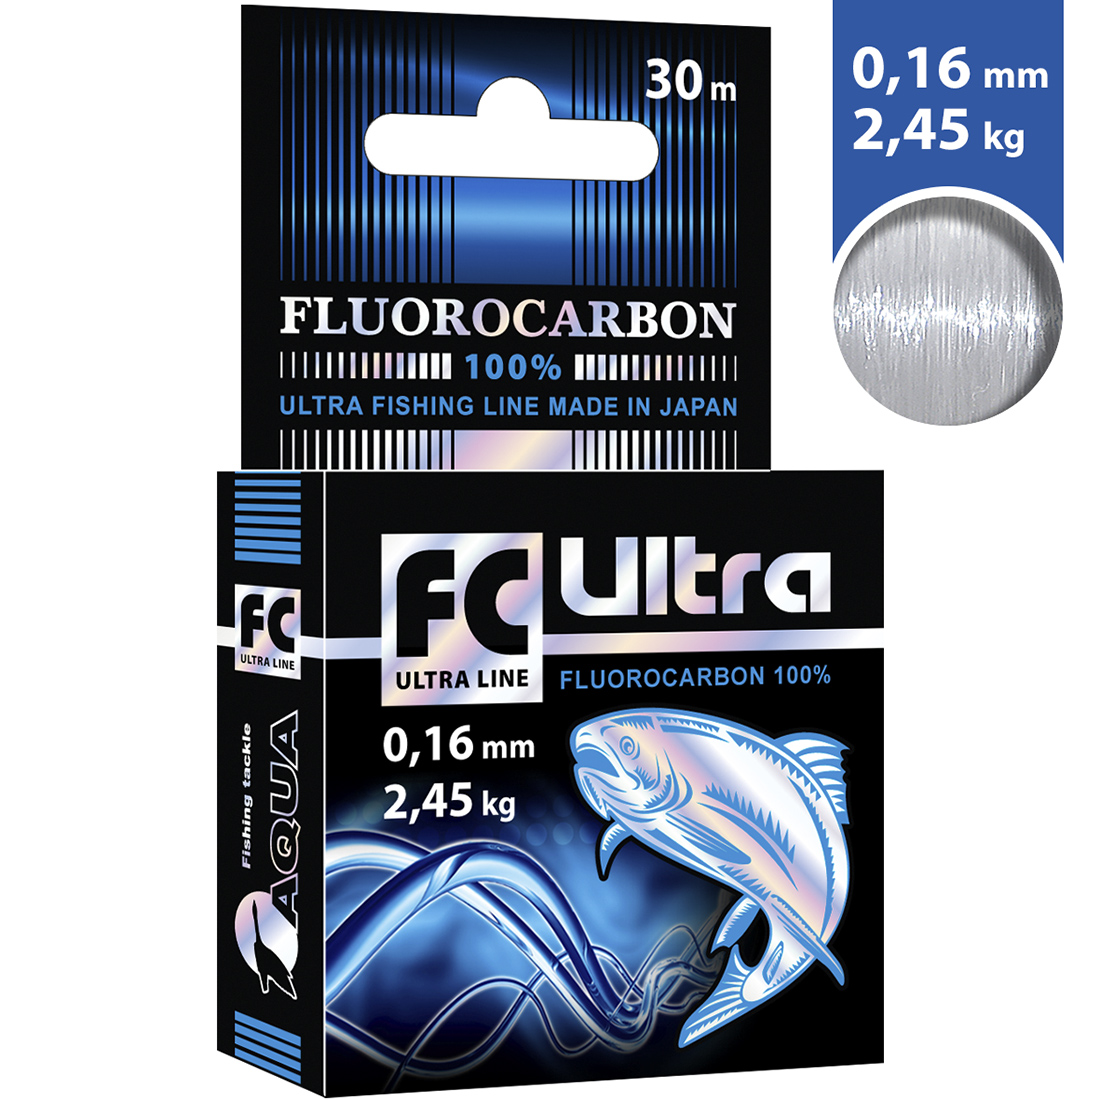 Леска AQUA FC Ultra Fluorocarbon 100% 0,16mm 30m, цвет - прозрачный, test - 2,45kg